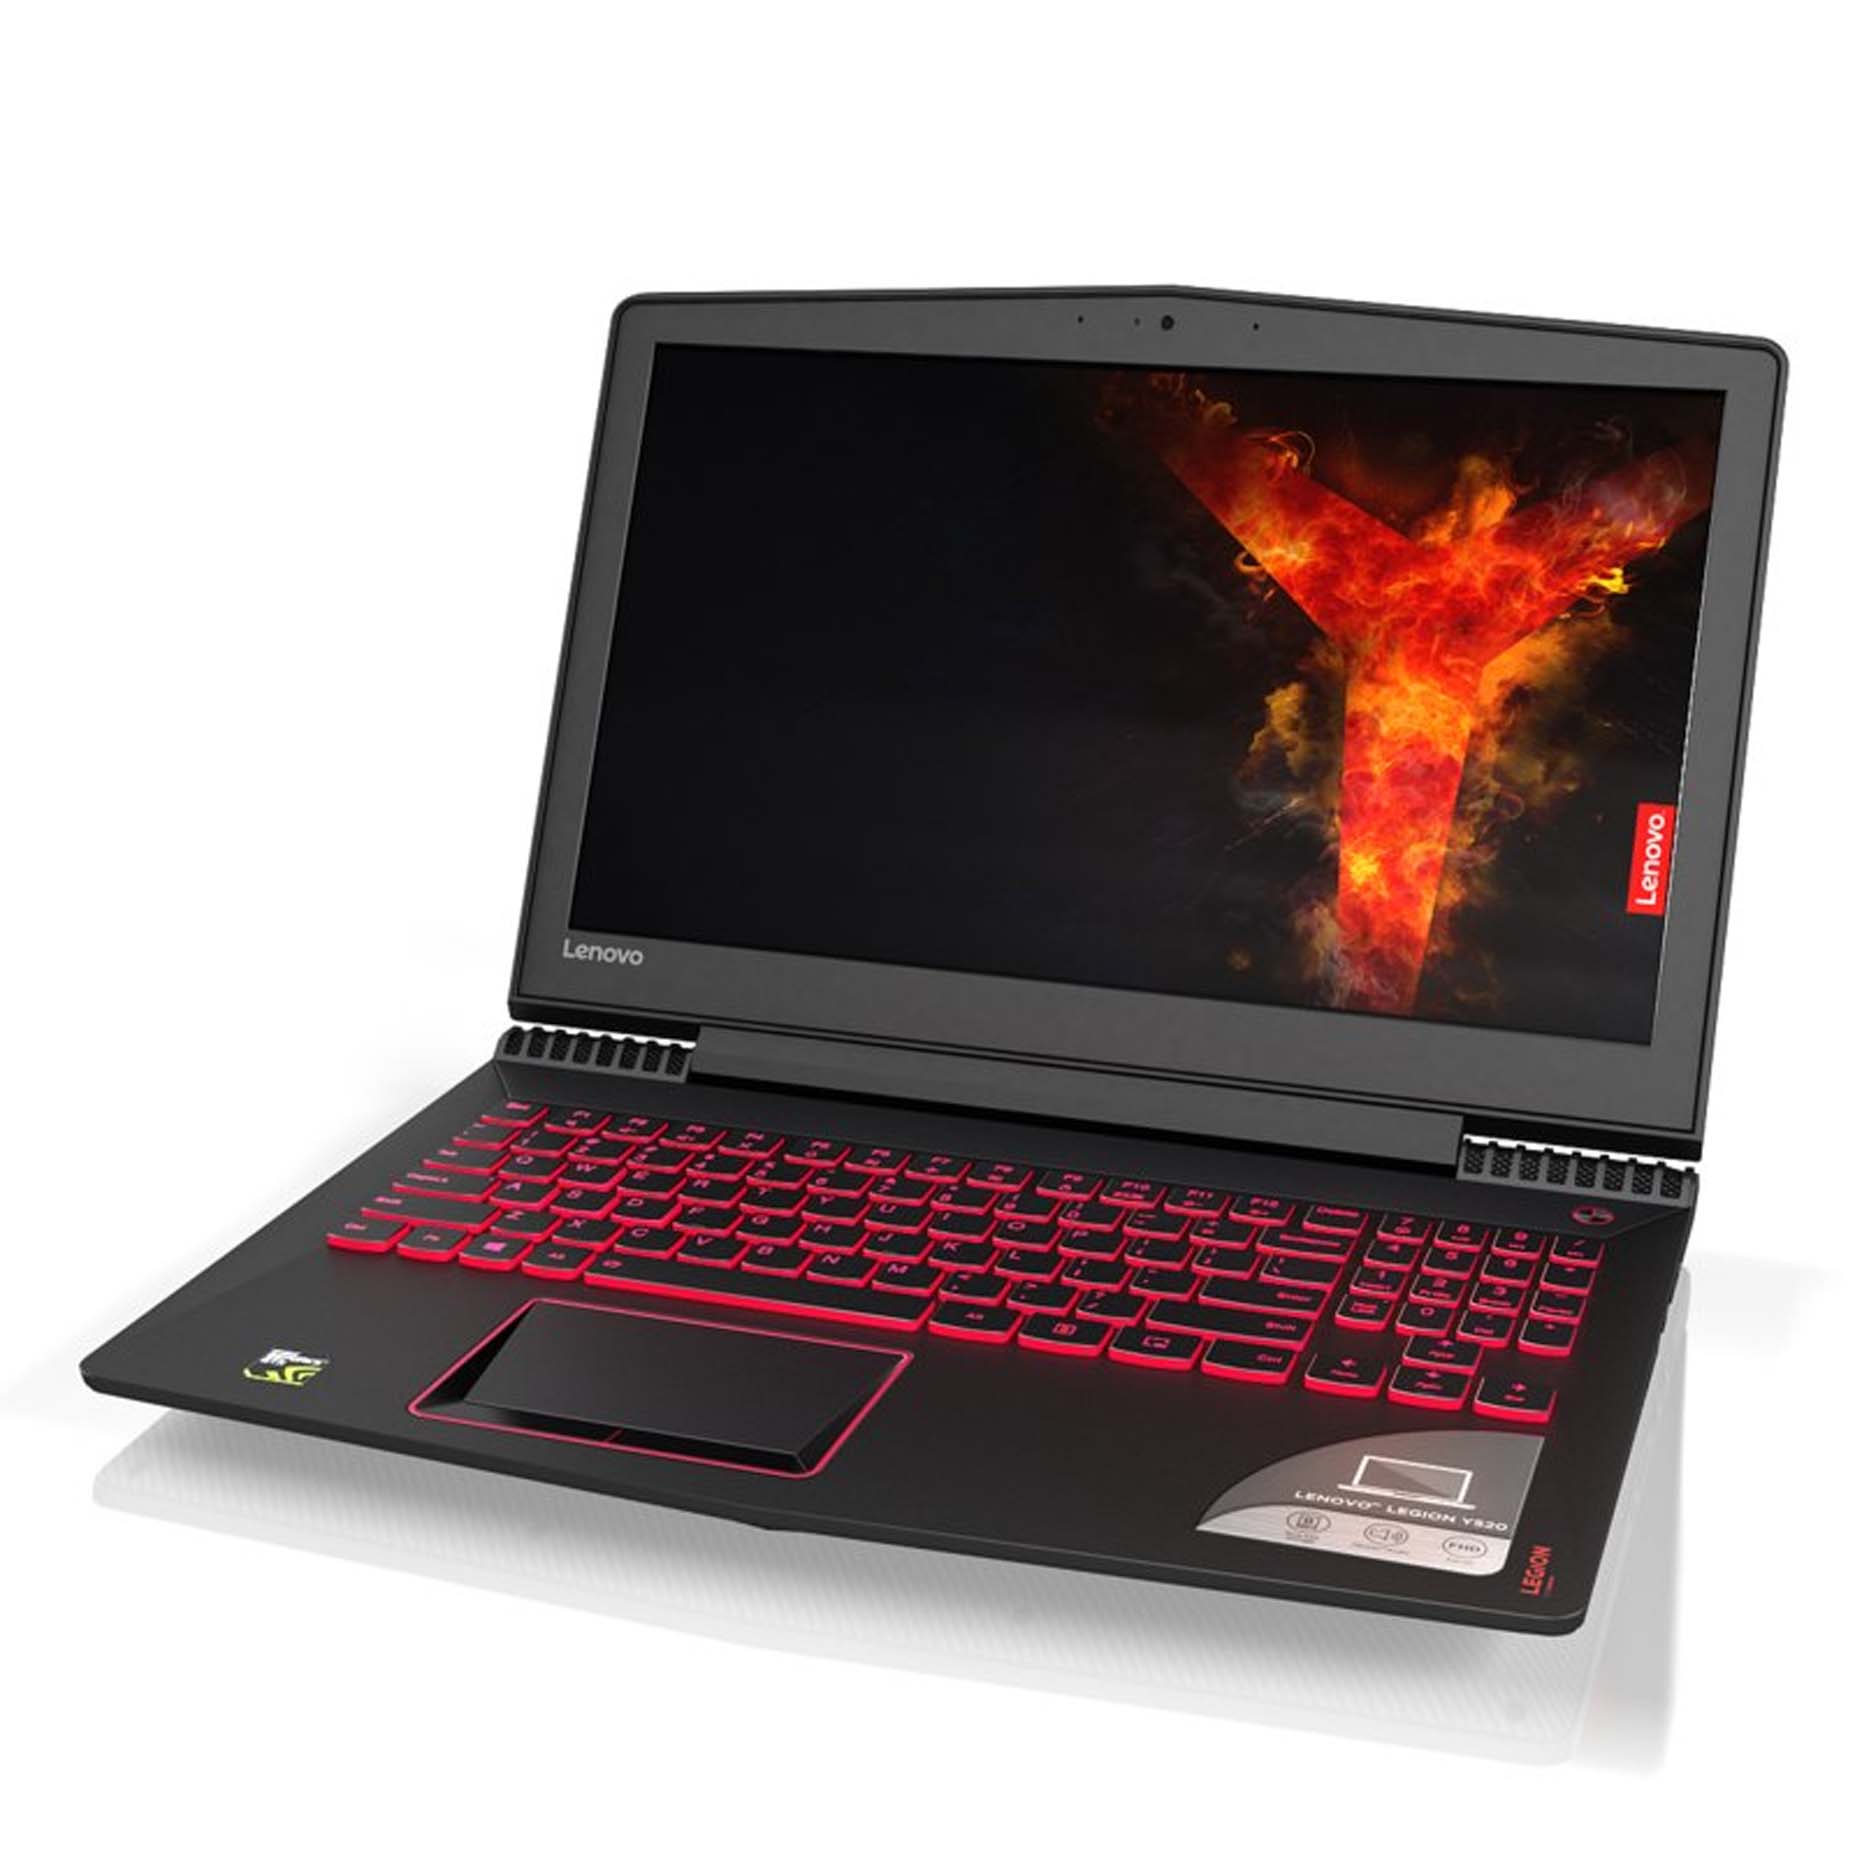 Harga Lenovo Legion Y520-15IKBM KAID Laptop i7-7700 16GB 2TB+512GB GTX1060 6GB Win10 15.6 Inch